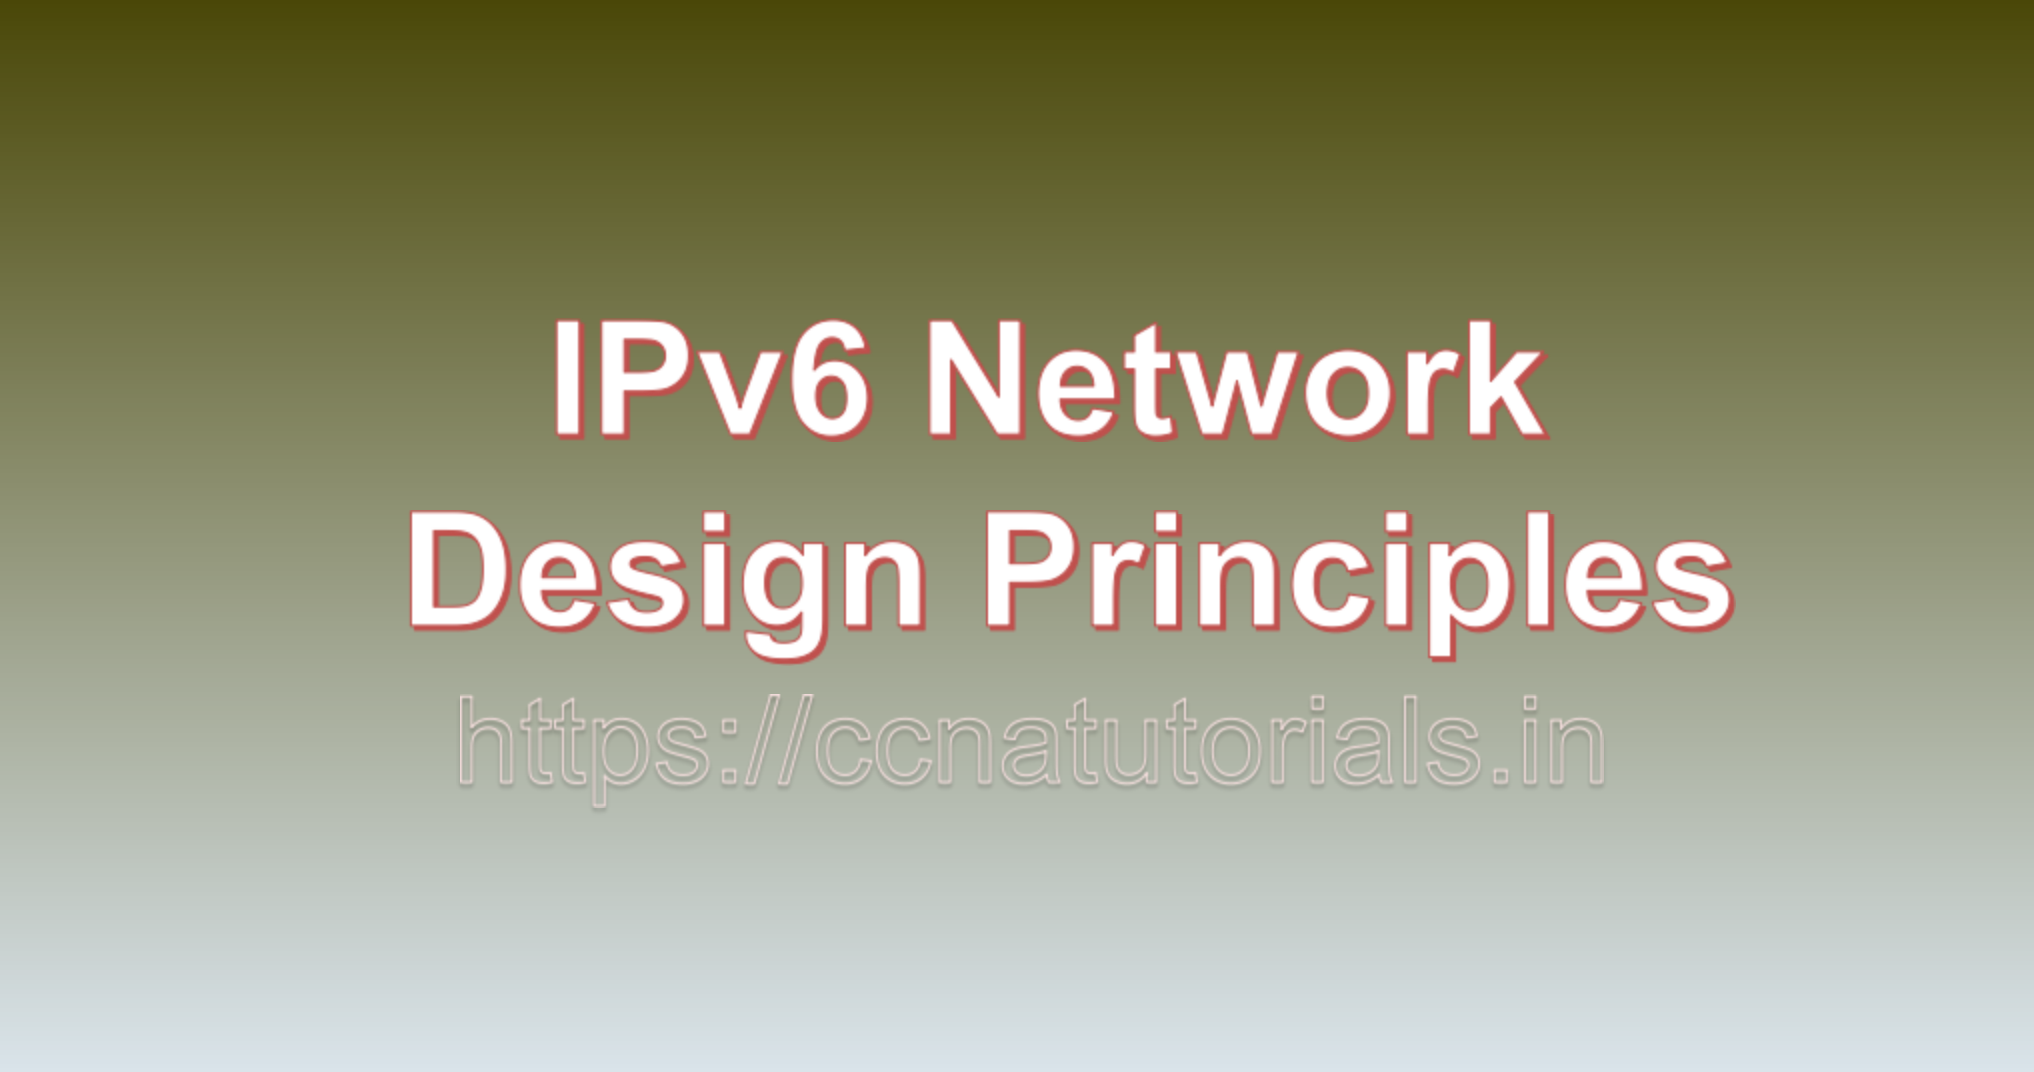 IPv6 Network Design Principles, ccna, ccna tutorials